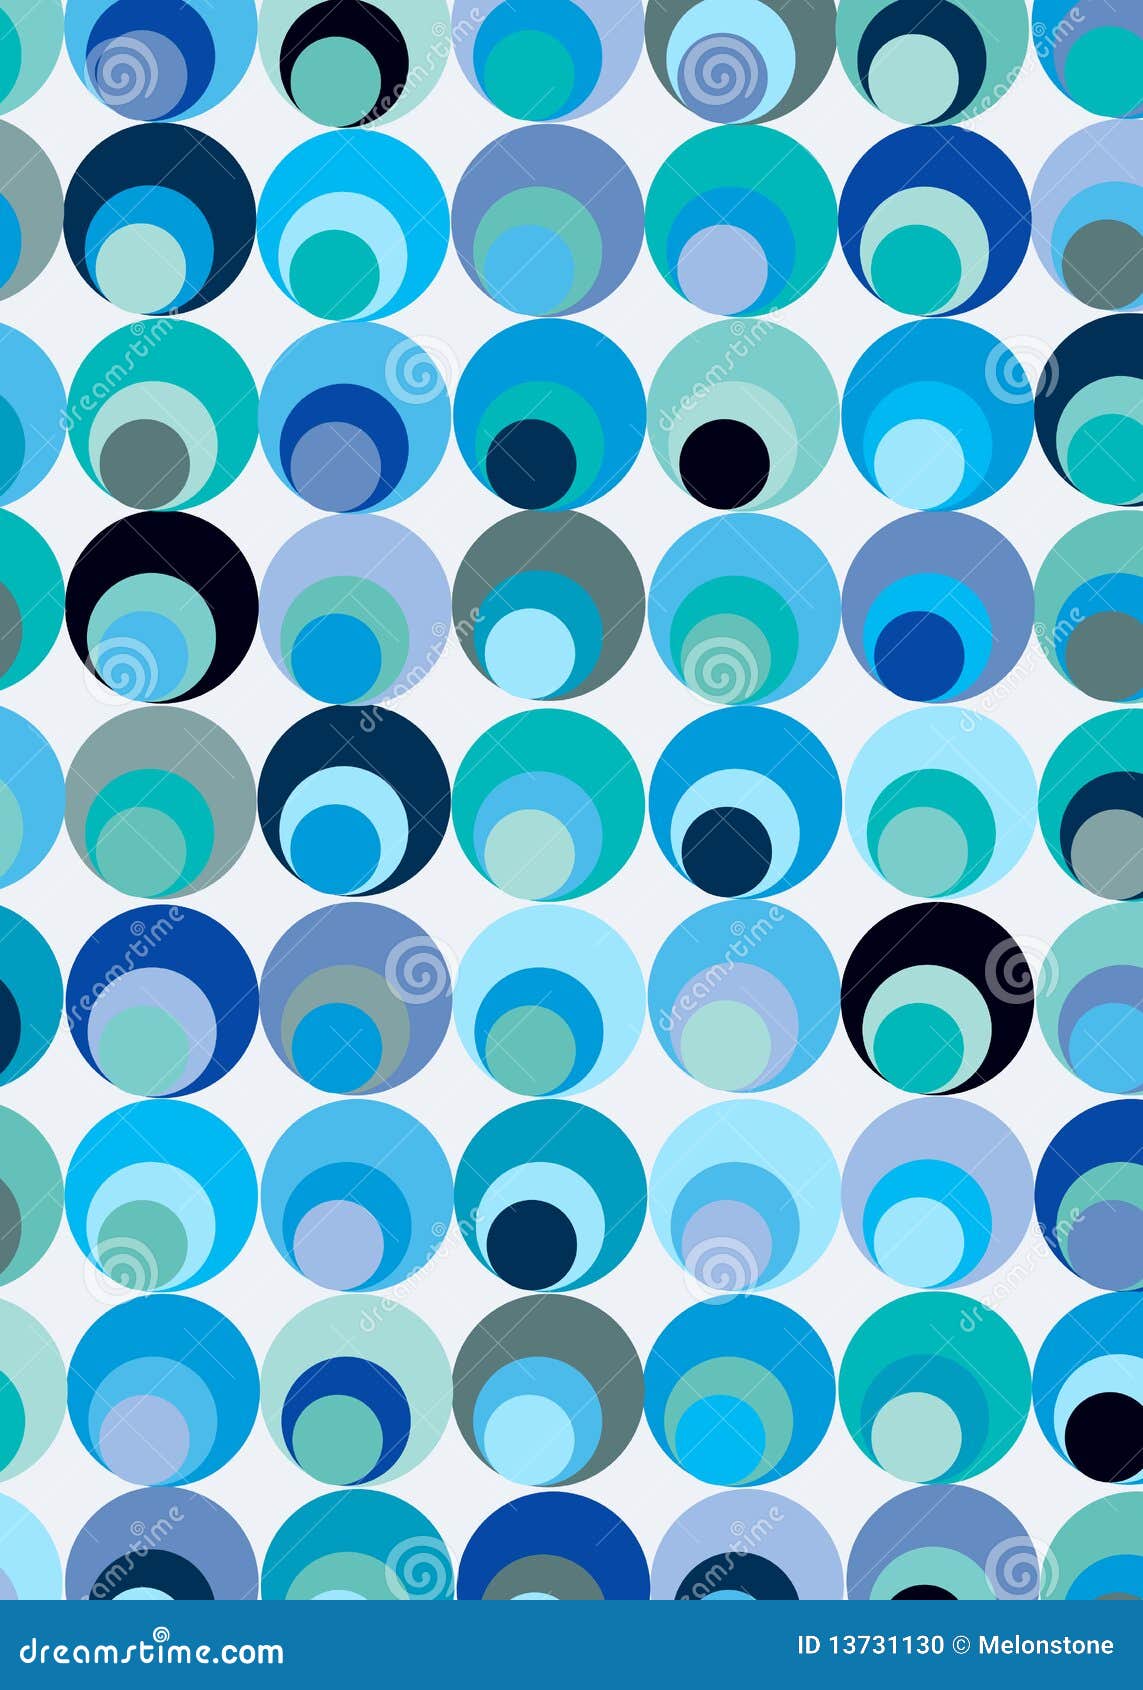 Círculos azuis. Um projeto do azul, da turquesa e de círculos cinzentos em um fundo branco apropriado para matérias têxteis, tela, papel, material e mais (também disponível no roxo)